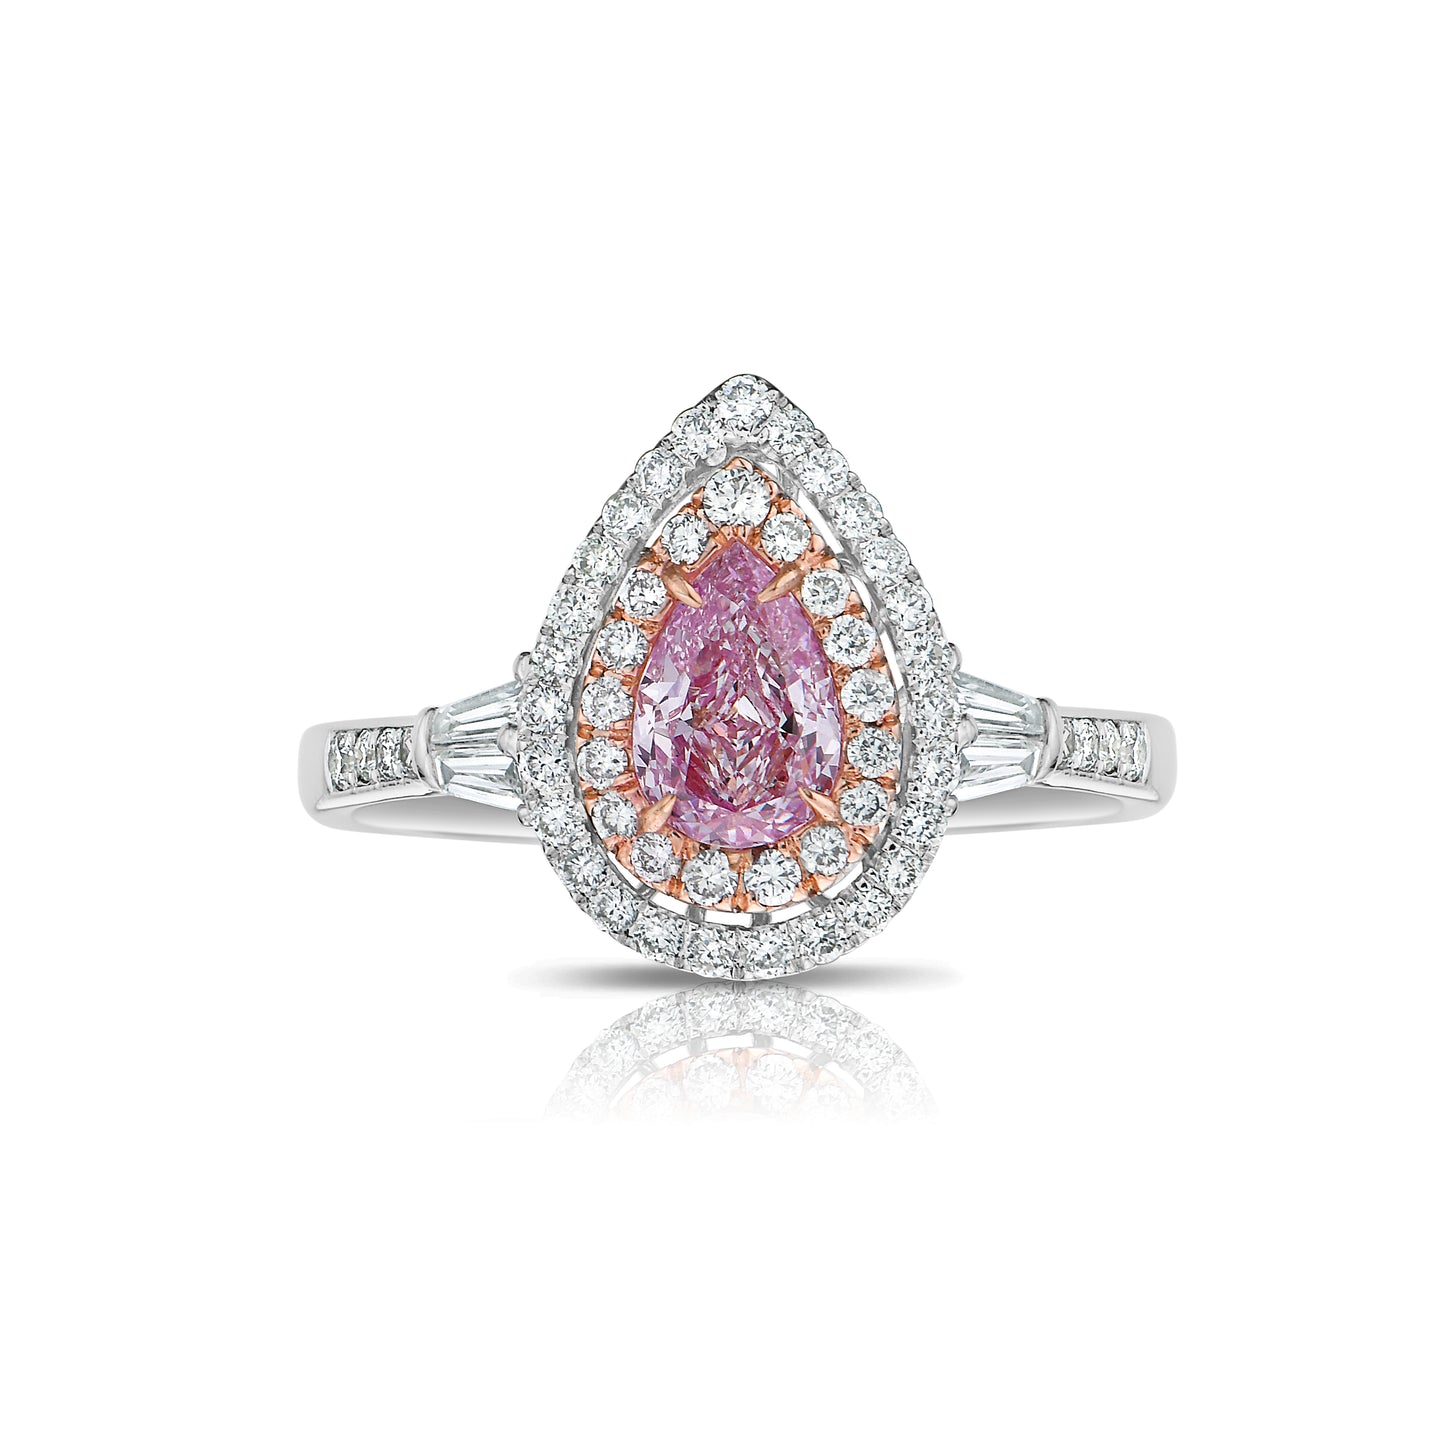 pink diamond ring. pink diamond rings. pink diamond jewlery. GIA certified pink diamond jewelry. GIA certified pink diamonds.